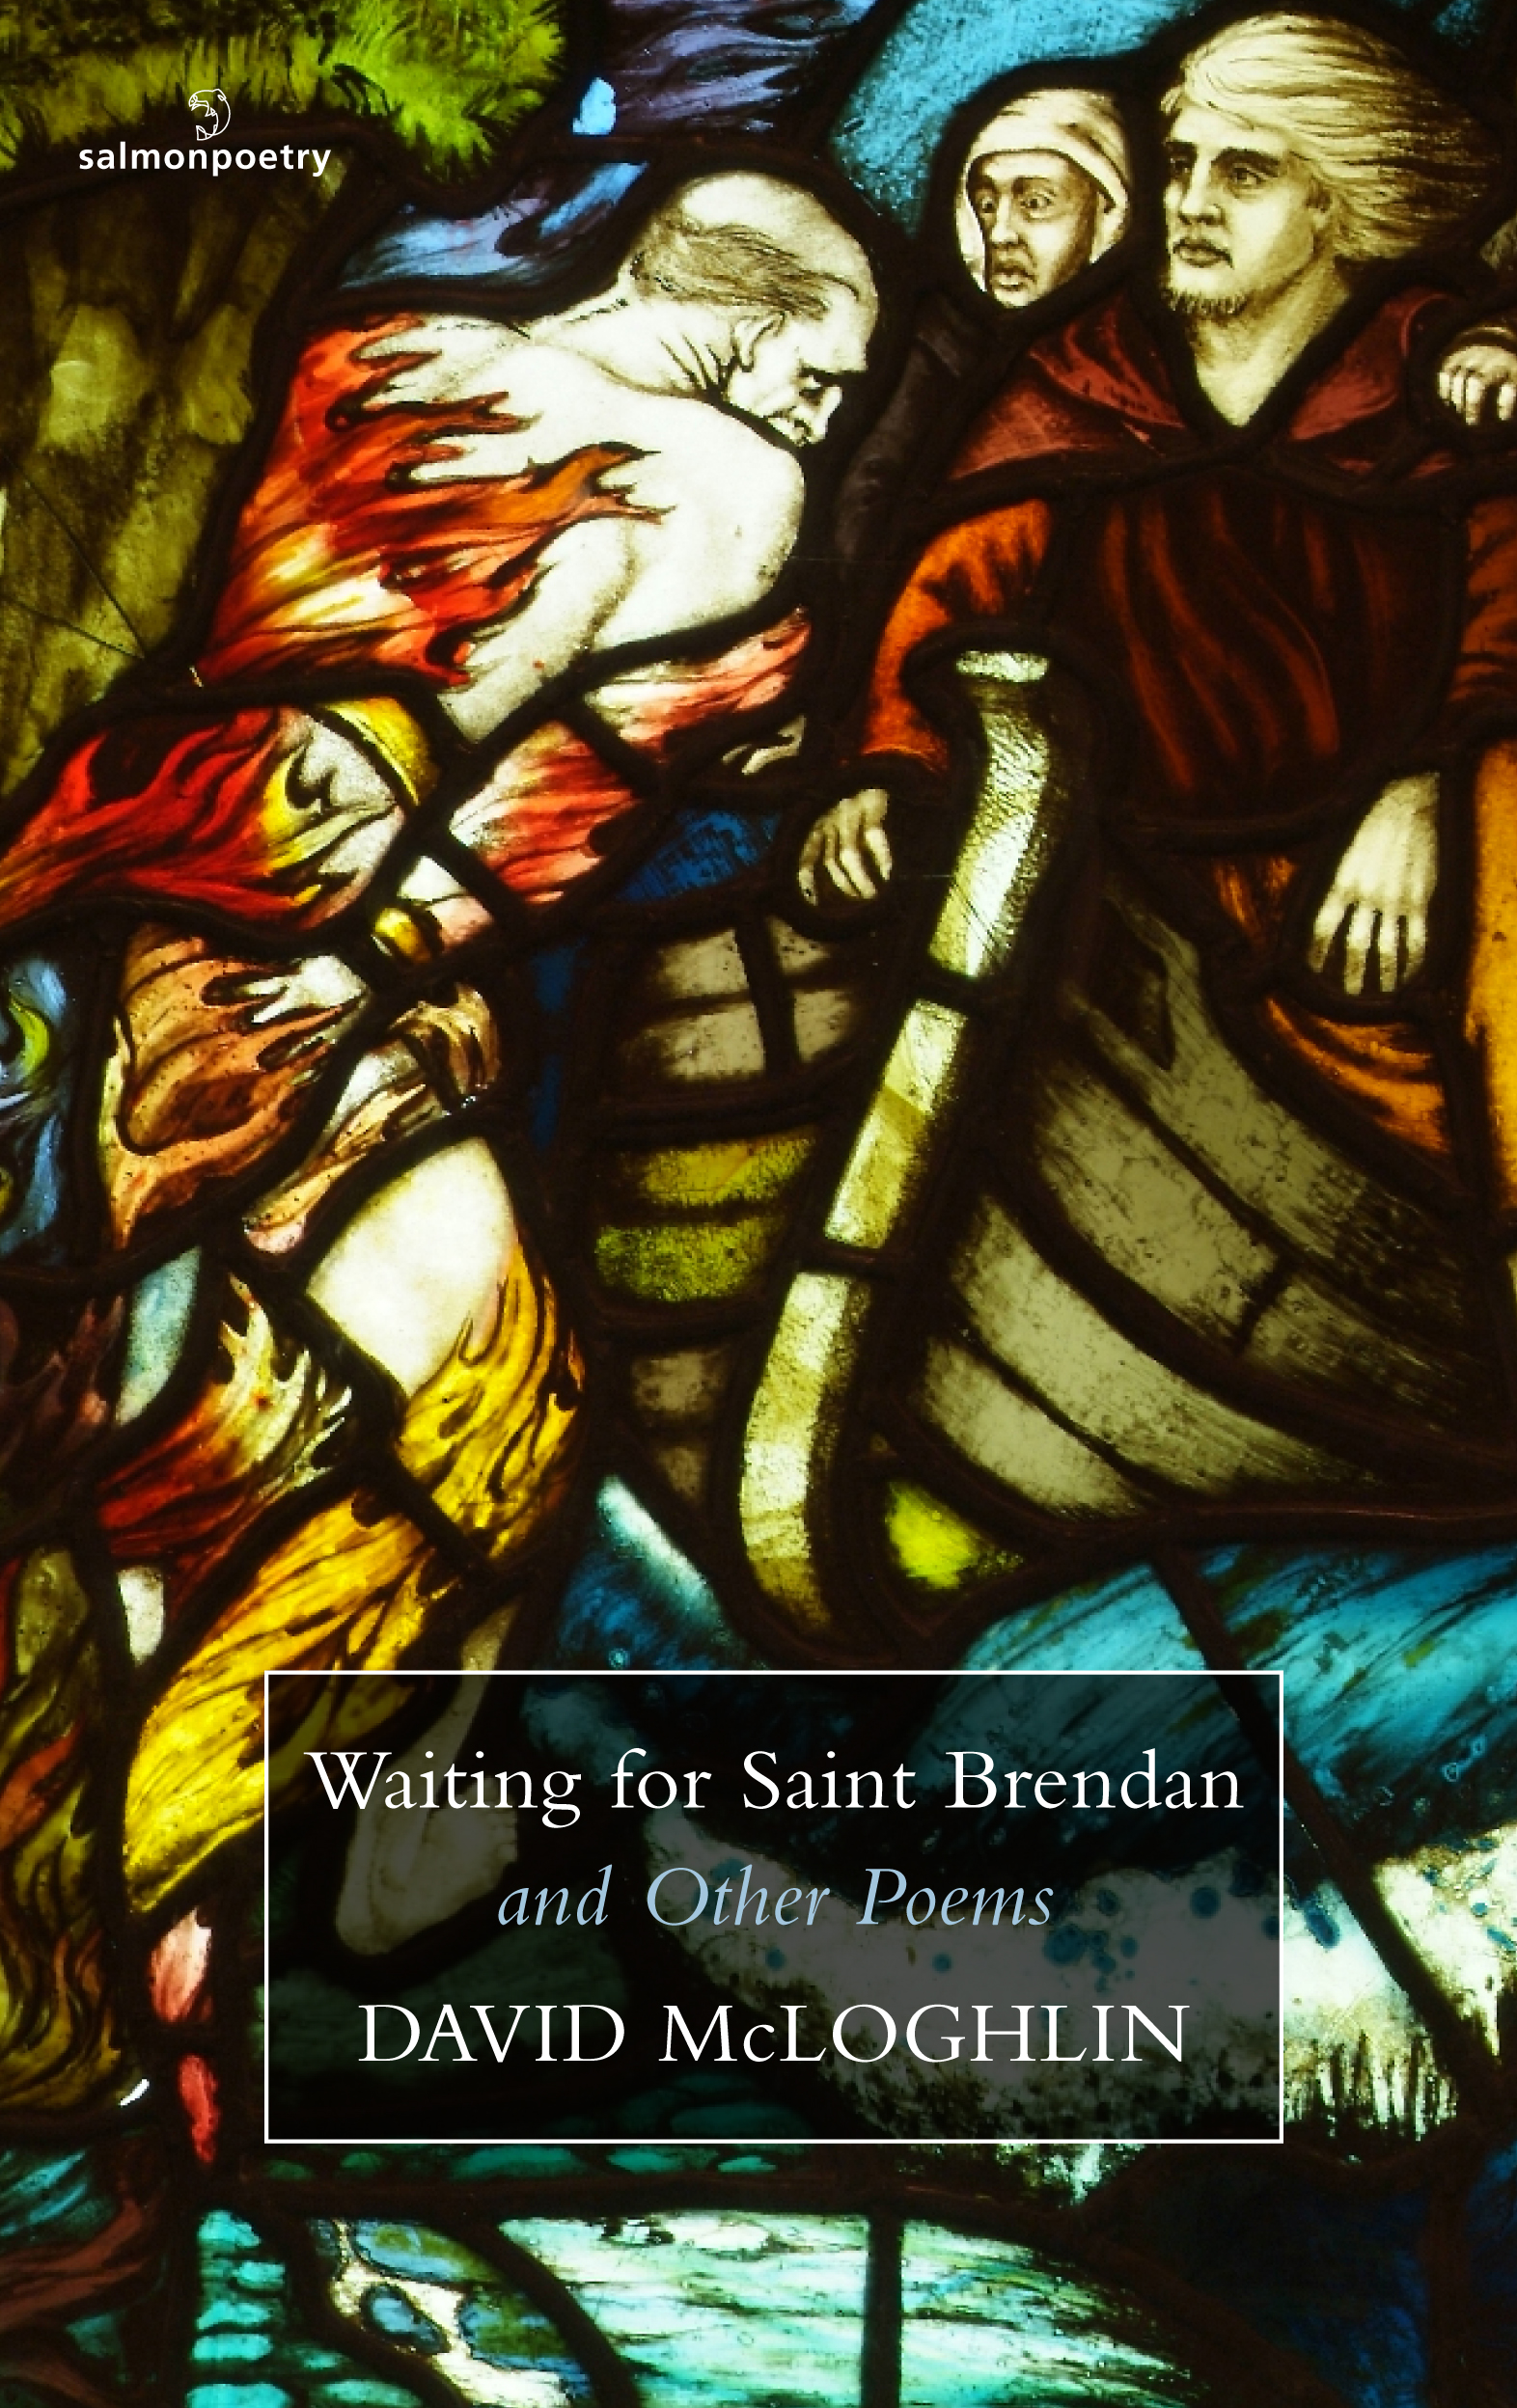 Waiting for Saint Brendan.jpg